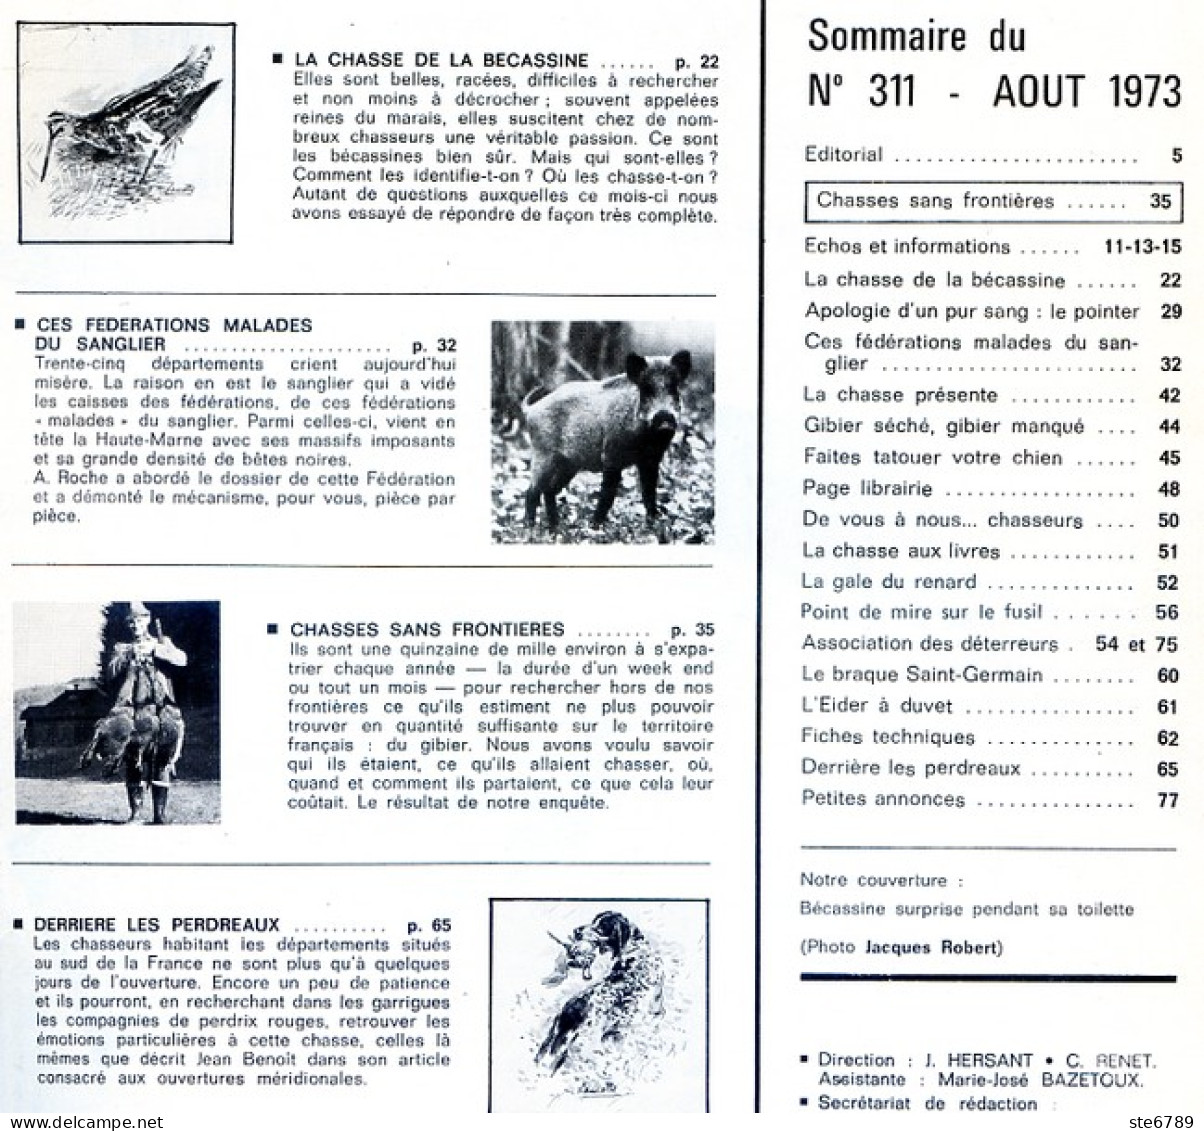 La Revue Nationale De LA CHASSE N° 311 Aout 1973 Chasse De La Bécassine , - Chasse & Pêche